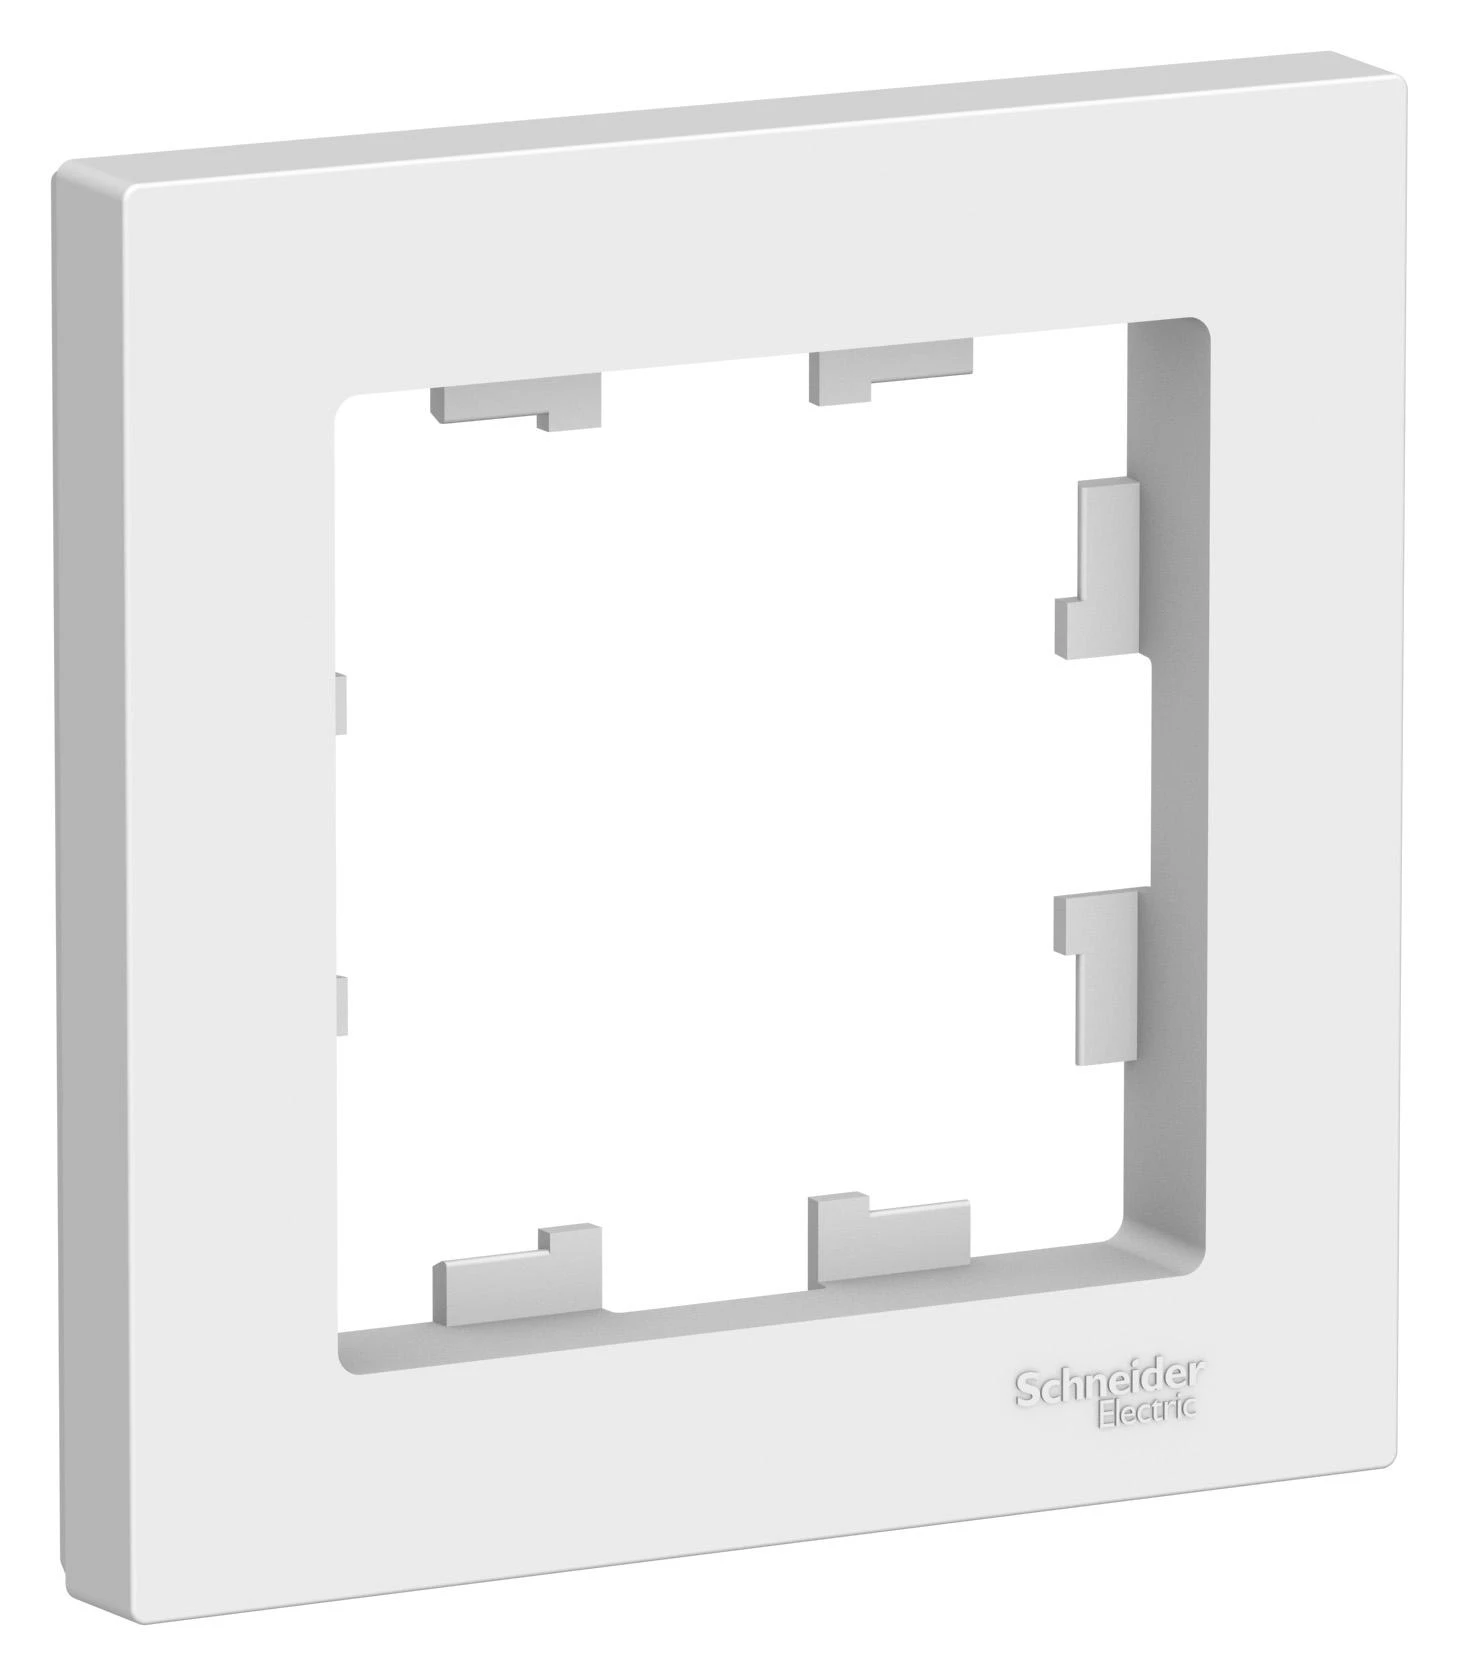  артикул ATN000101 название Рамка 1-ая (одинарная), Белый, серия Atlas Design, Schneider Electric